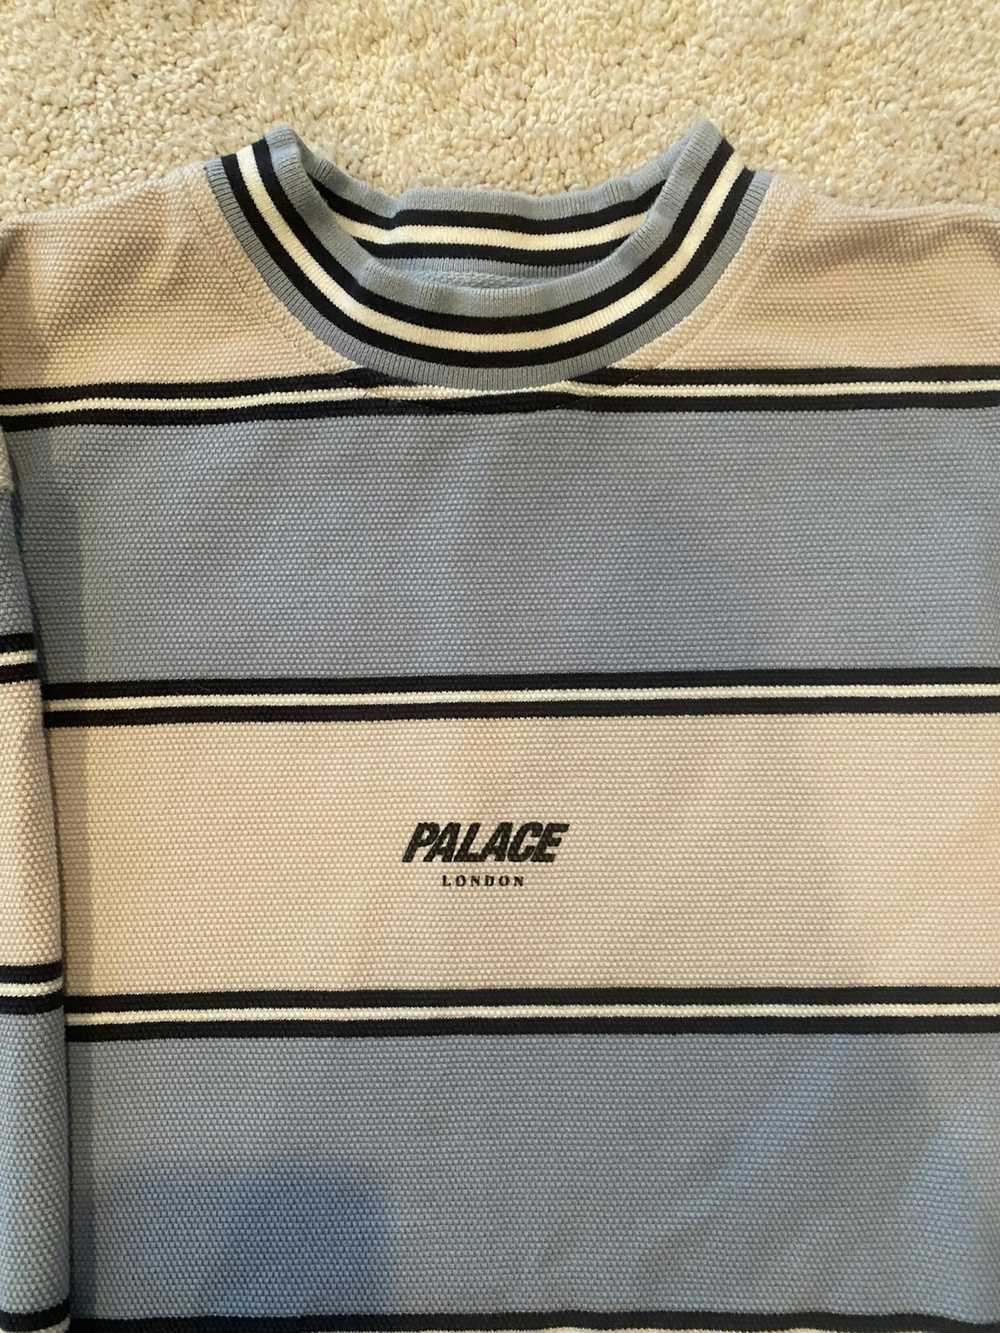 Palace Palace Blue/White Waffle Long Sleeve - image 2